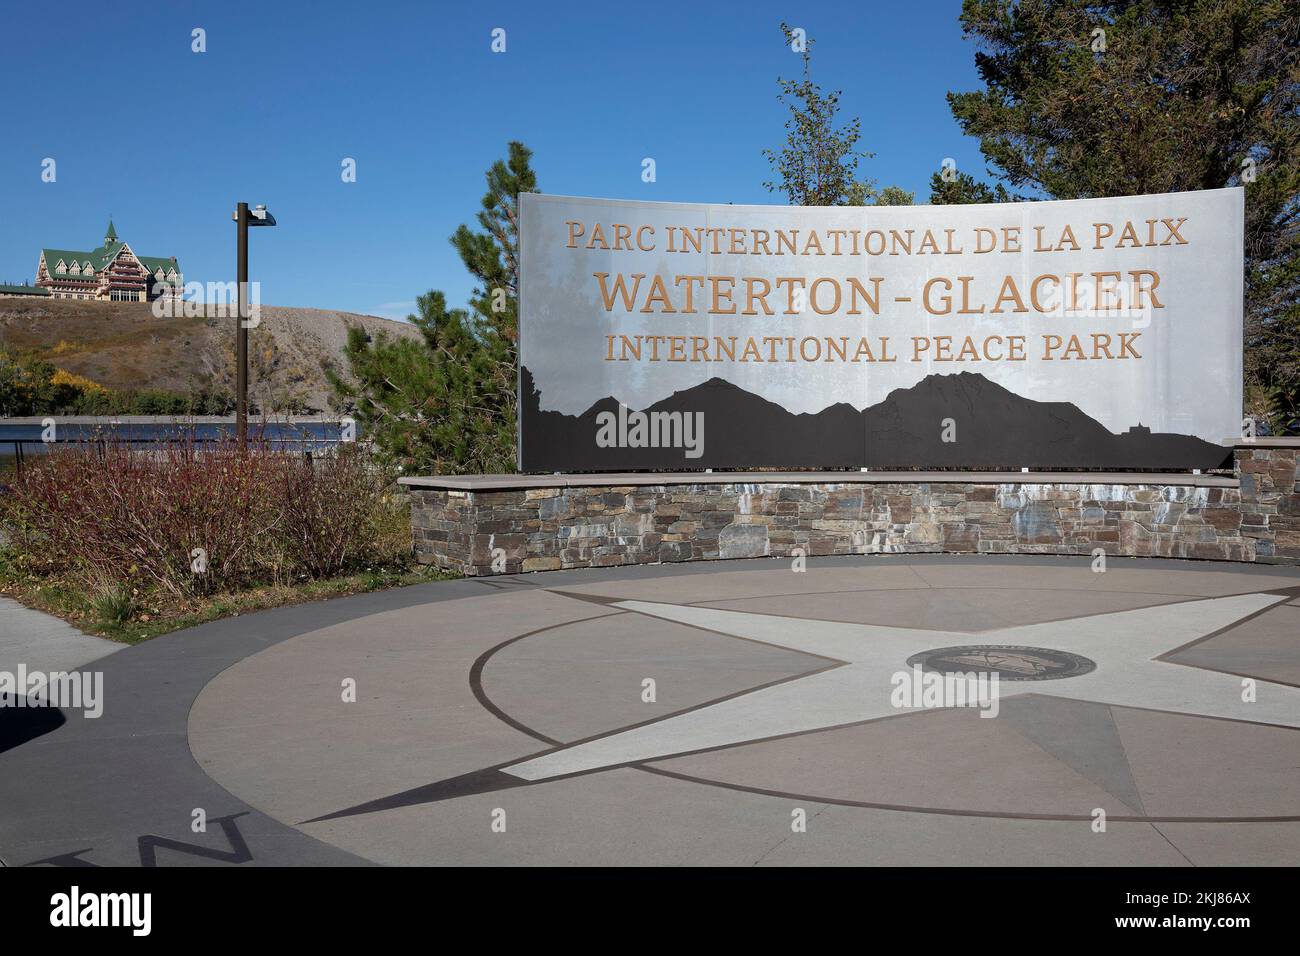 Waterton-Glacier International Peace Park plaza dans la ville de Waterton, Alberta, Canada. C'est le premier parc international de la paix au monde. Banque D'Images